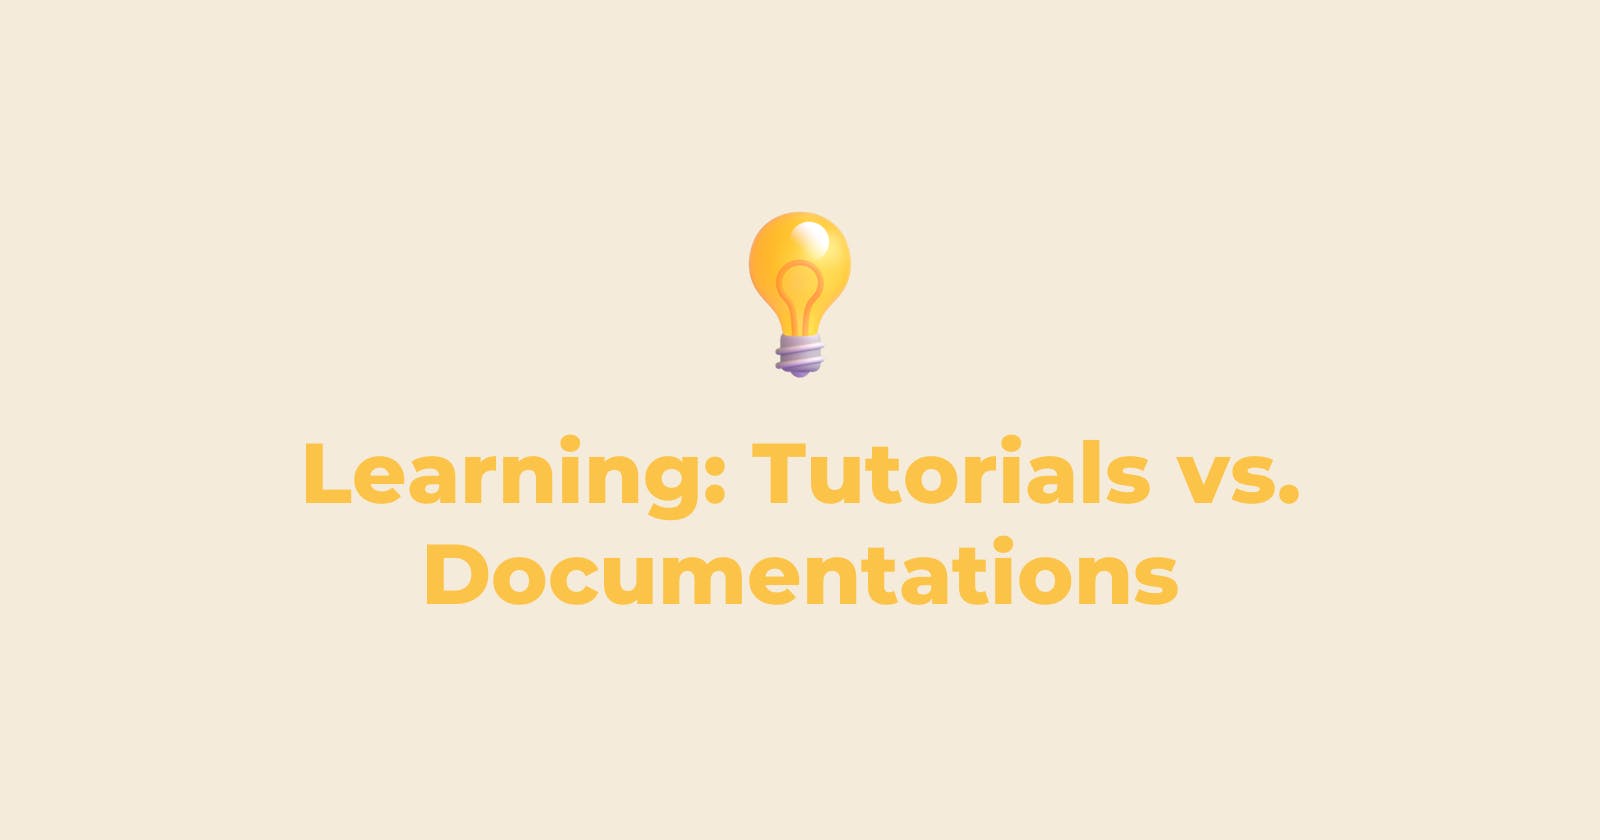 Learning: Tutorials vs. Documentations